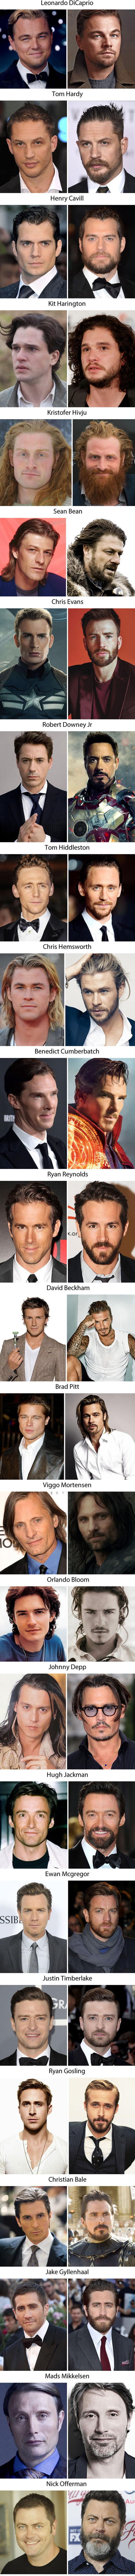 Fotografije koje dokazuju da su muškarci s bradom puno privlačniji